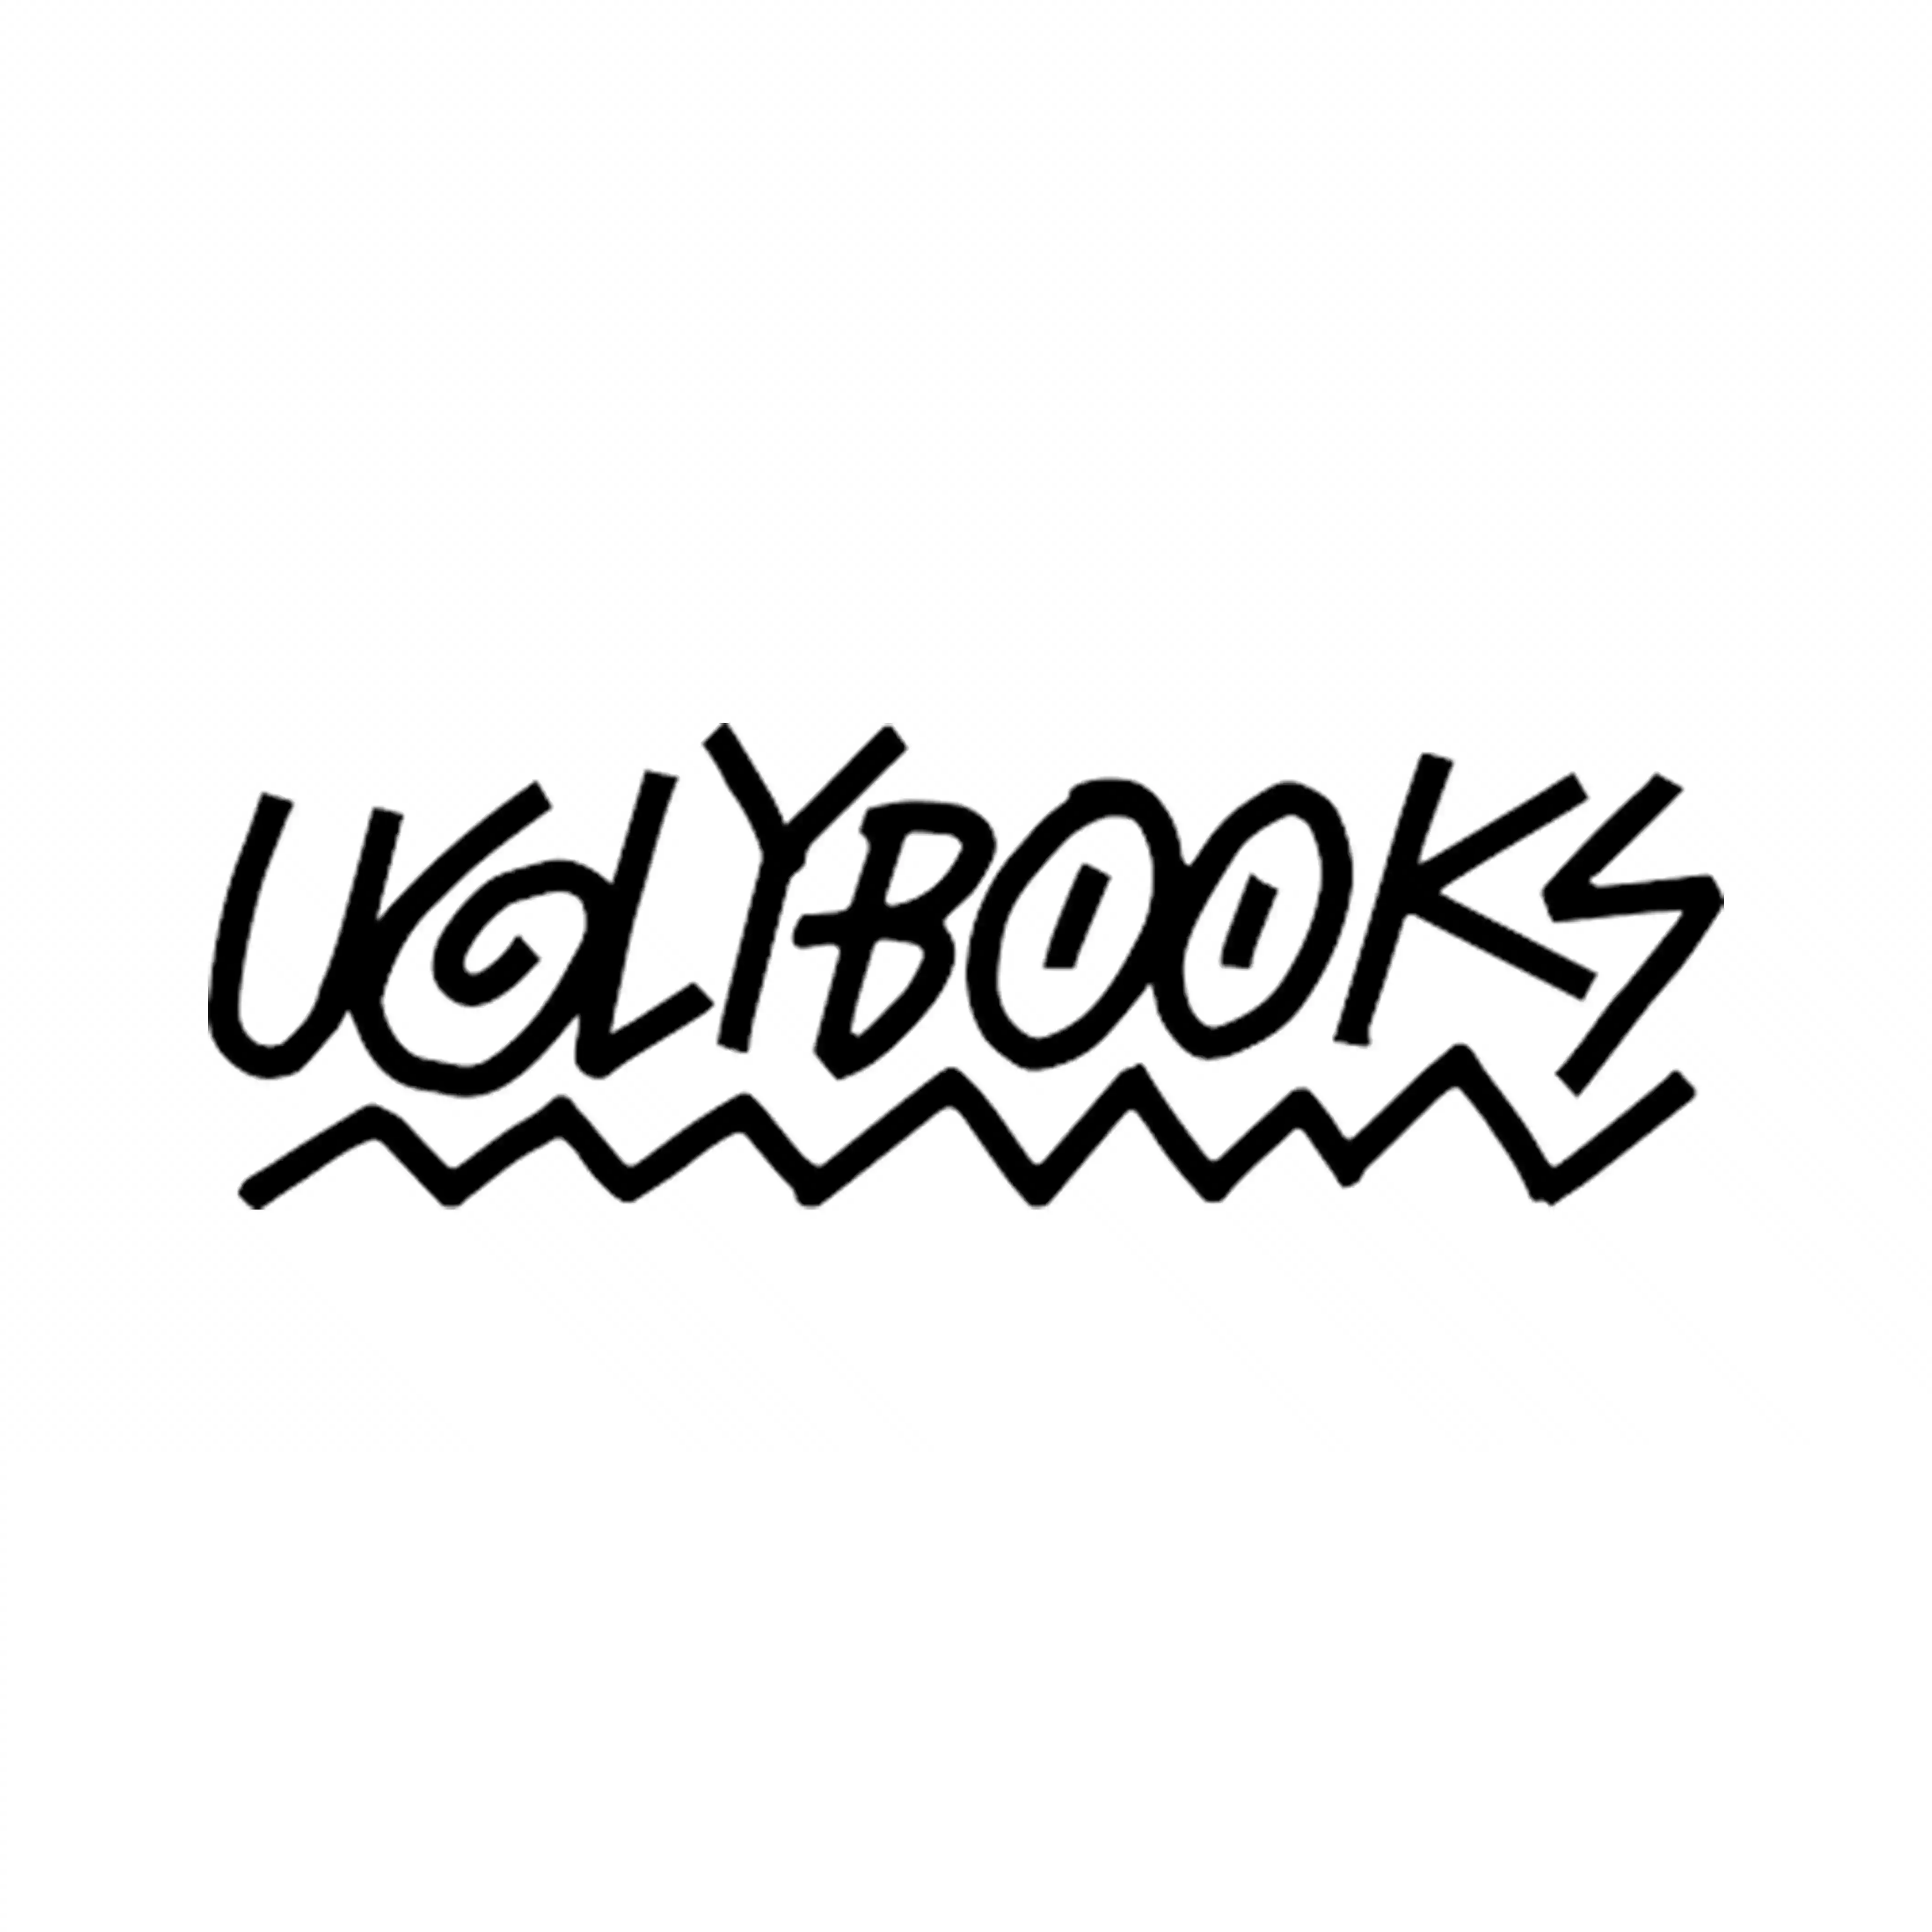 Uglybooks promo codes